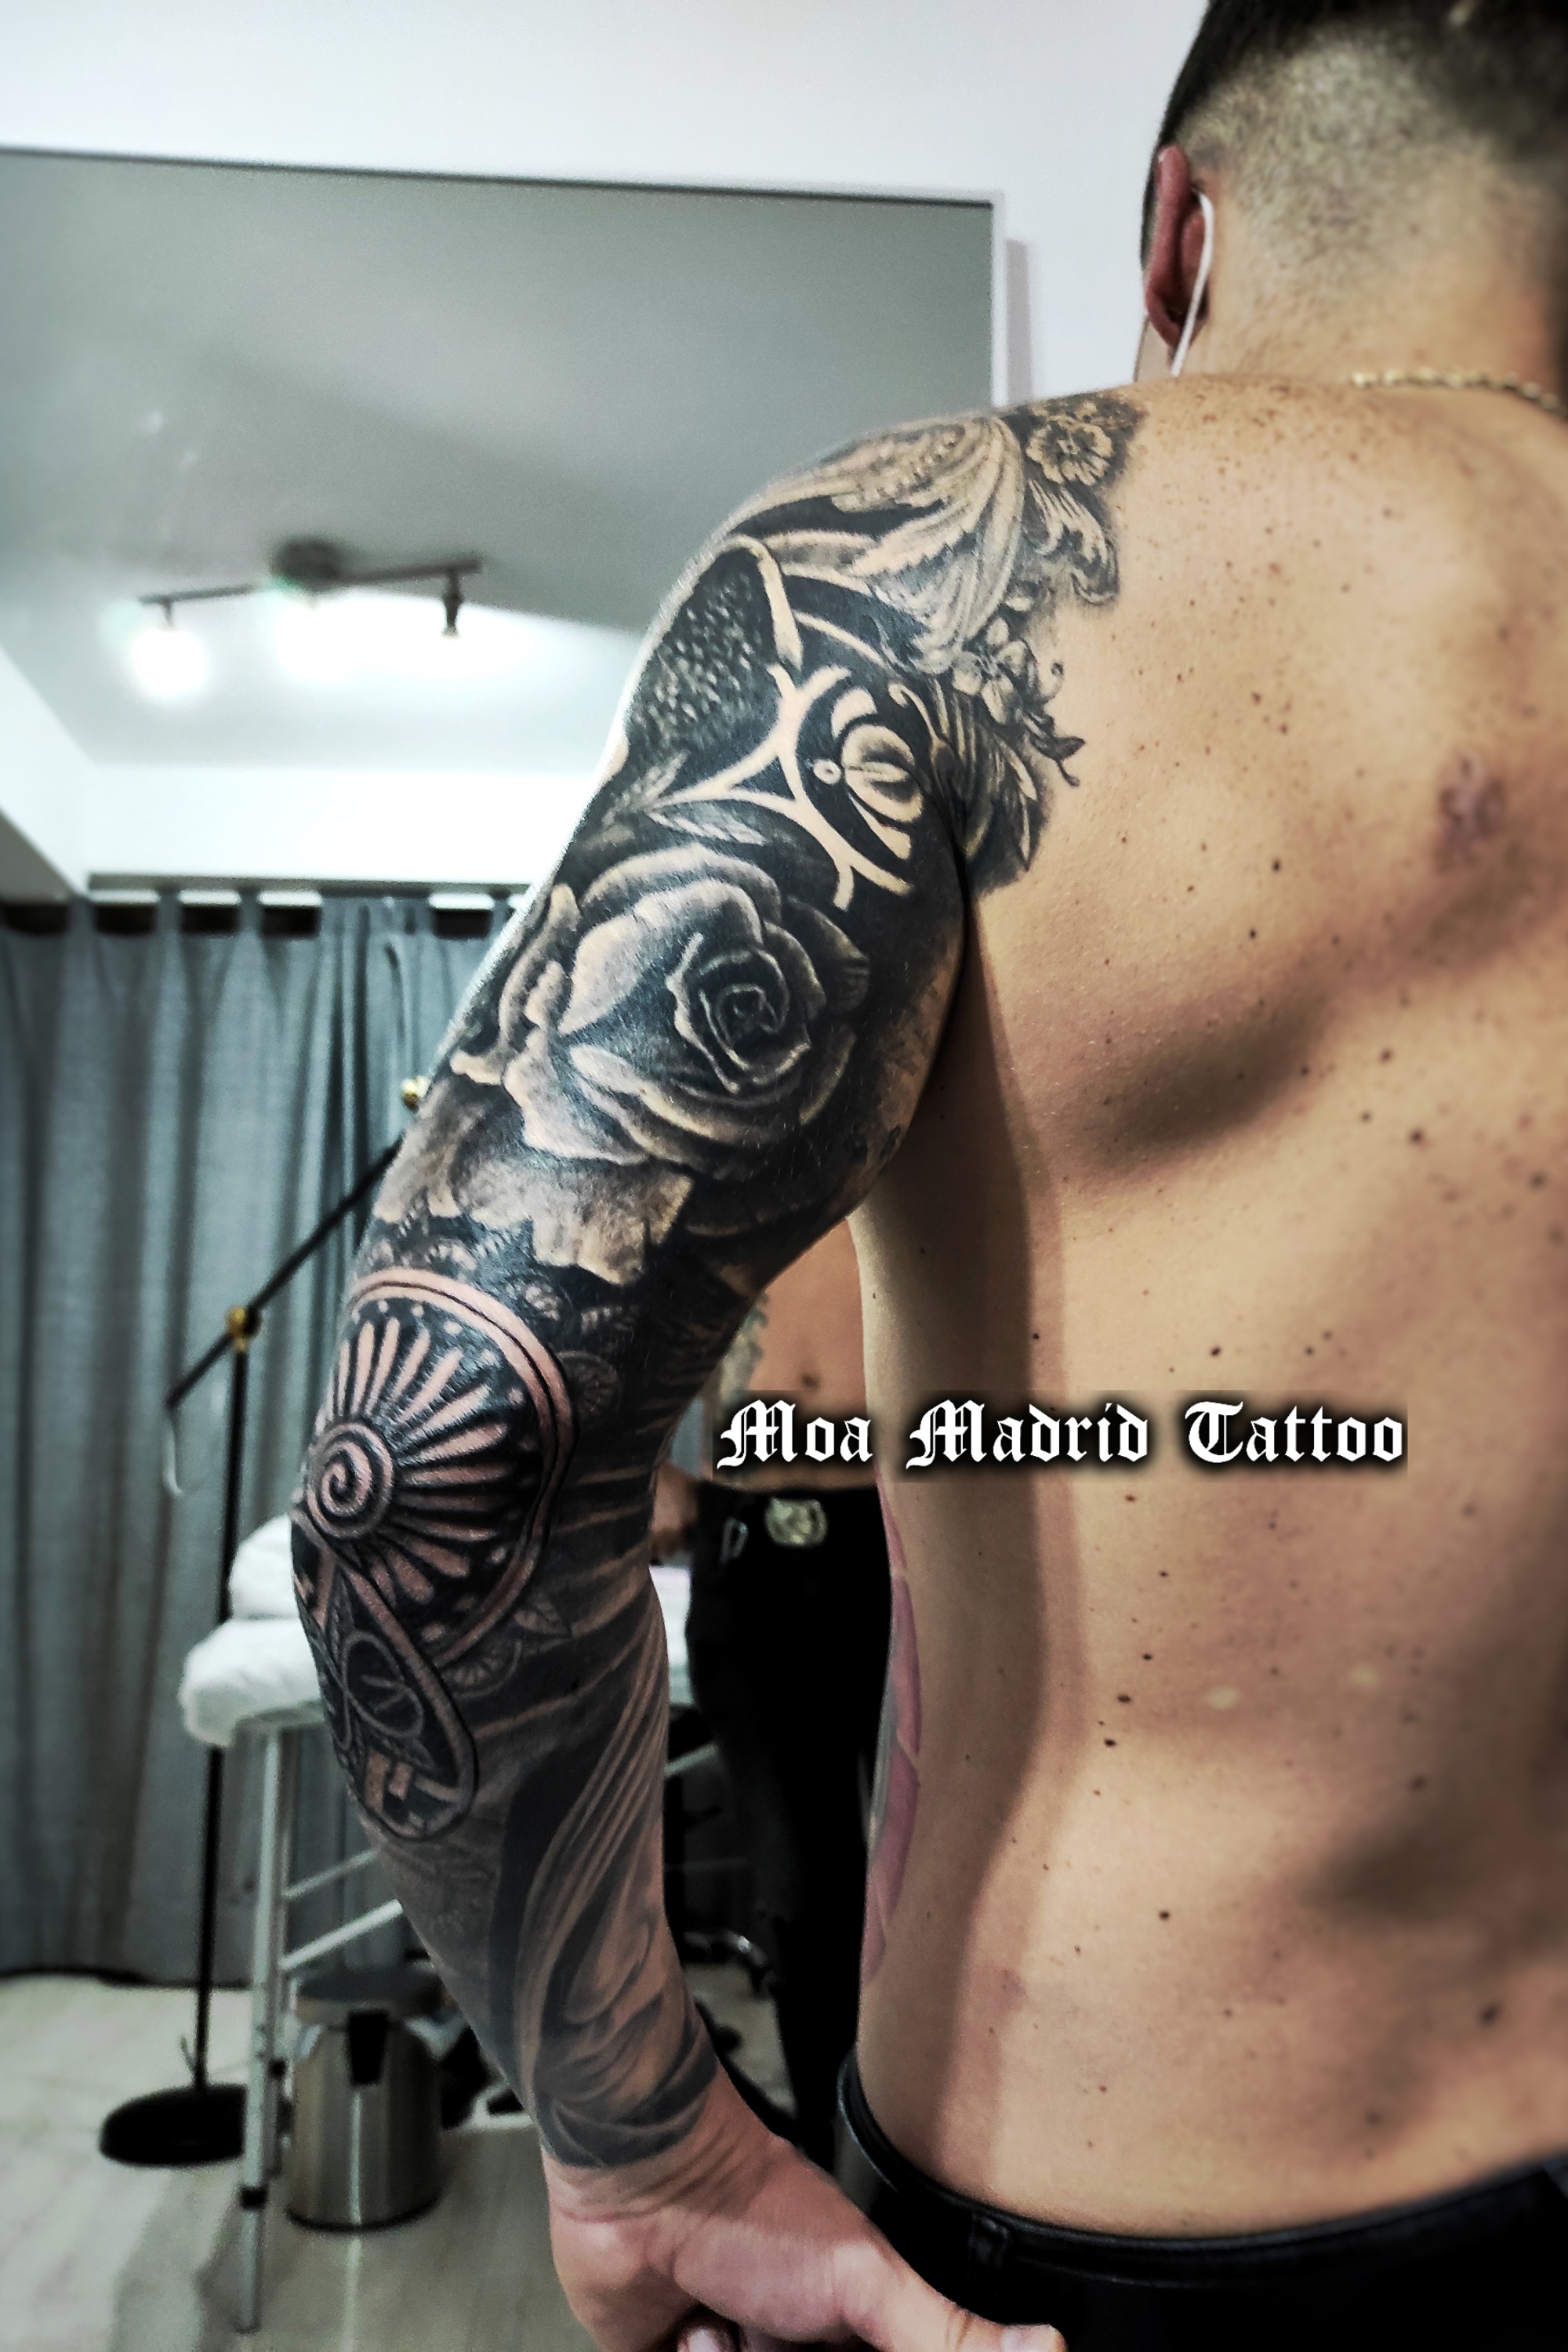 Moa, tatuador en Madrid para tu brazo entero de tatuajes